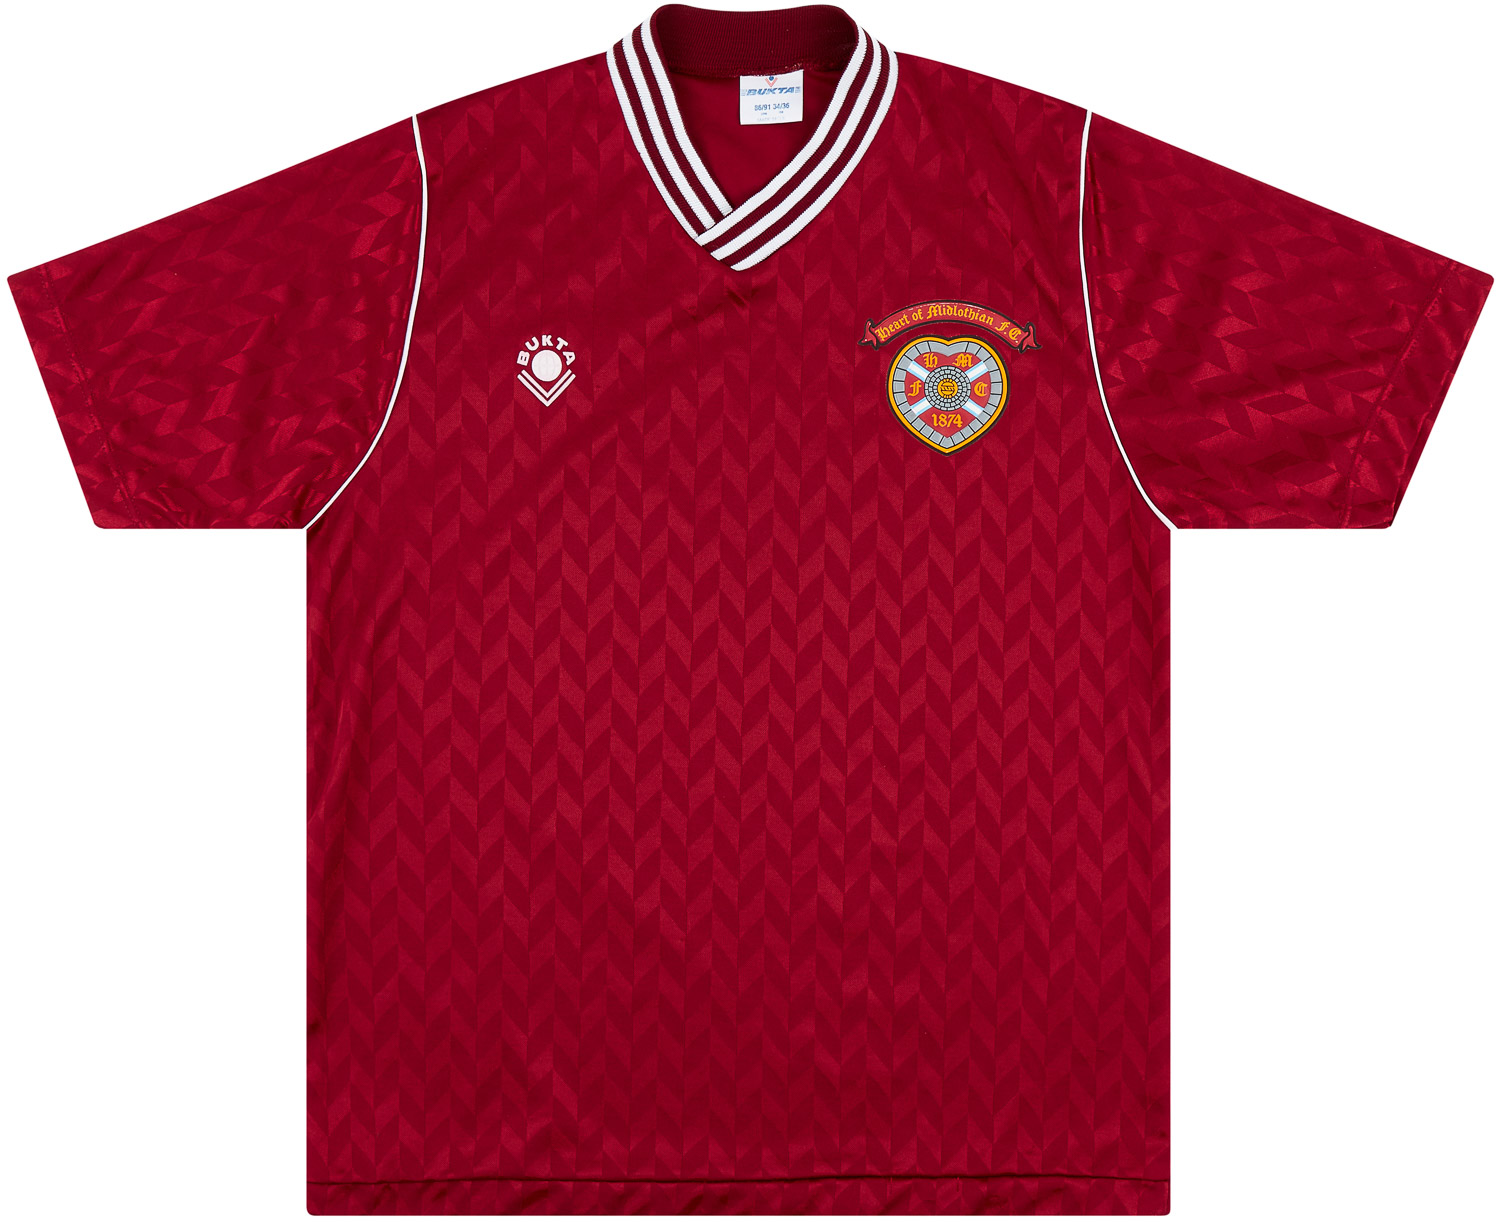 1989-90 Heart Of Midlothian (Hearts) Home Shirt